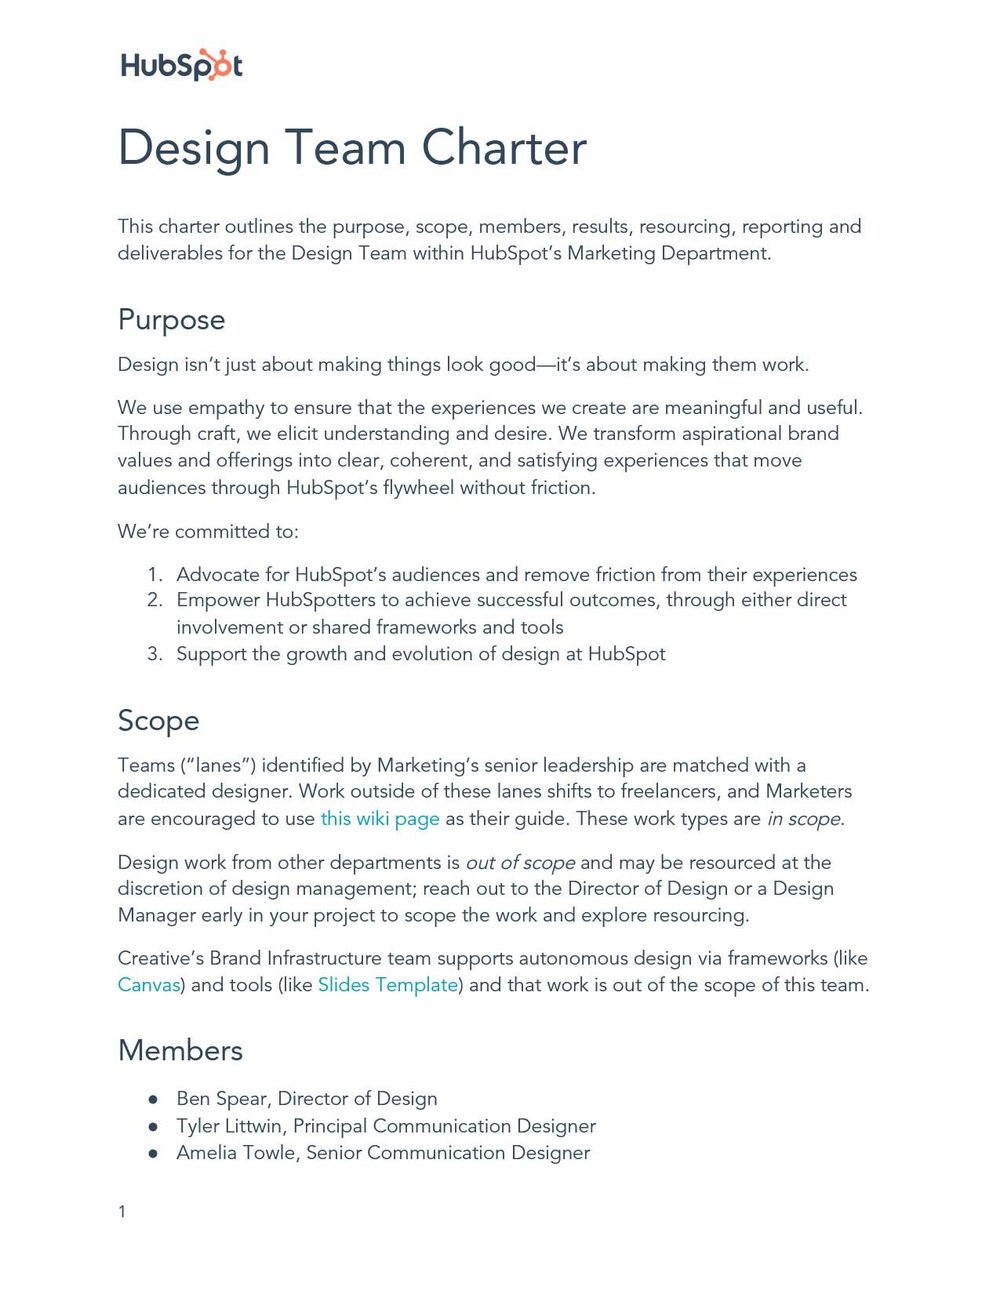 Design-Team-Charter-1.jpg